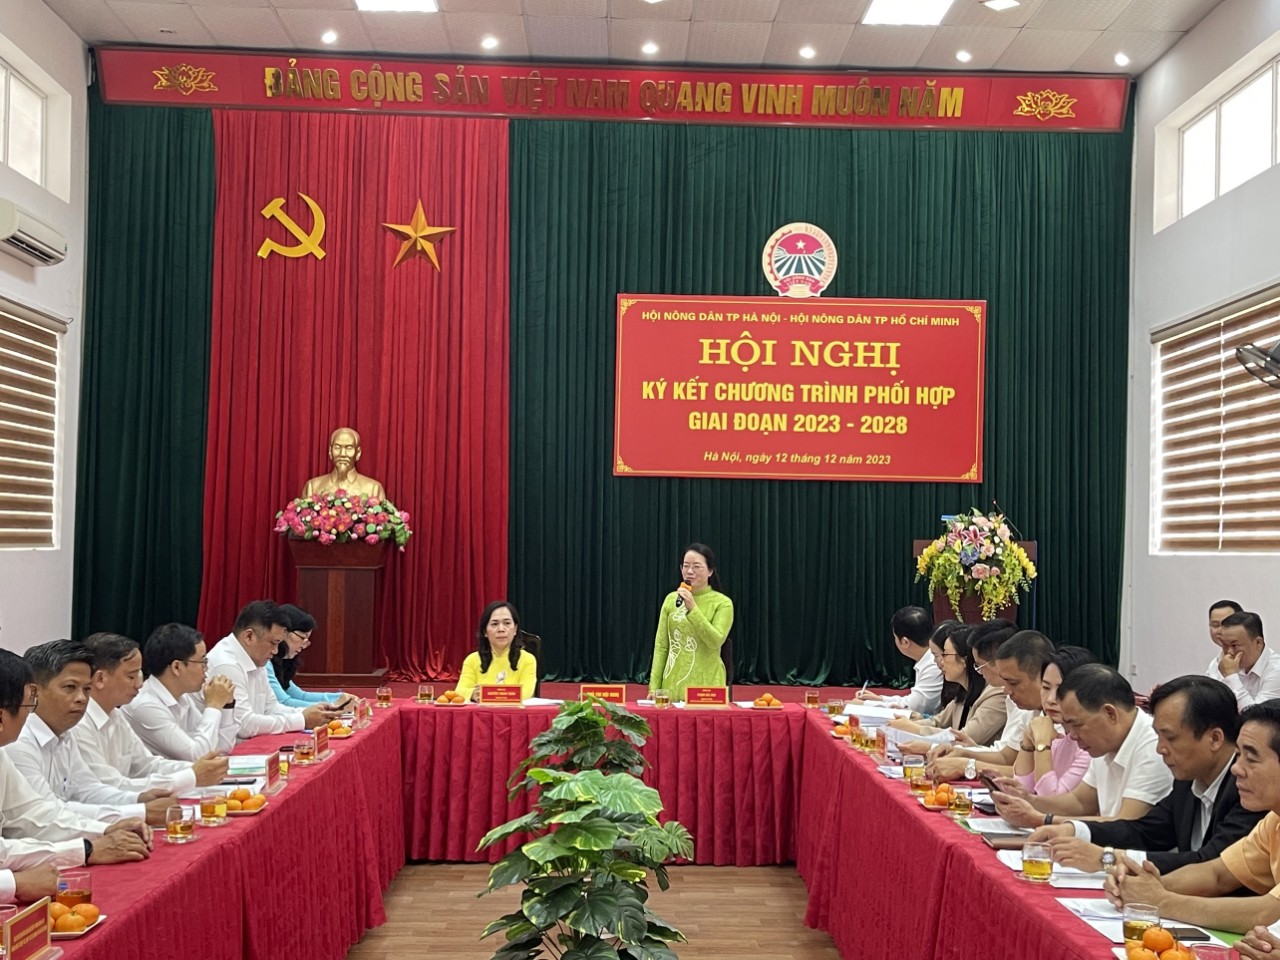 Hội Nông dân TP Hà Nội ký kết hợp tác với Hội Nông dân TP Hồ Chí Minh - Ảnh 2.